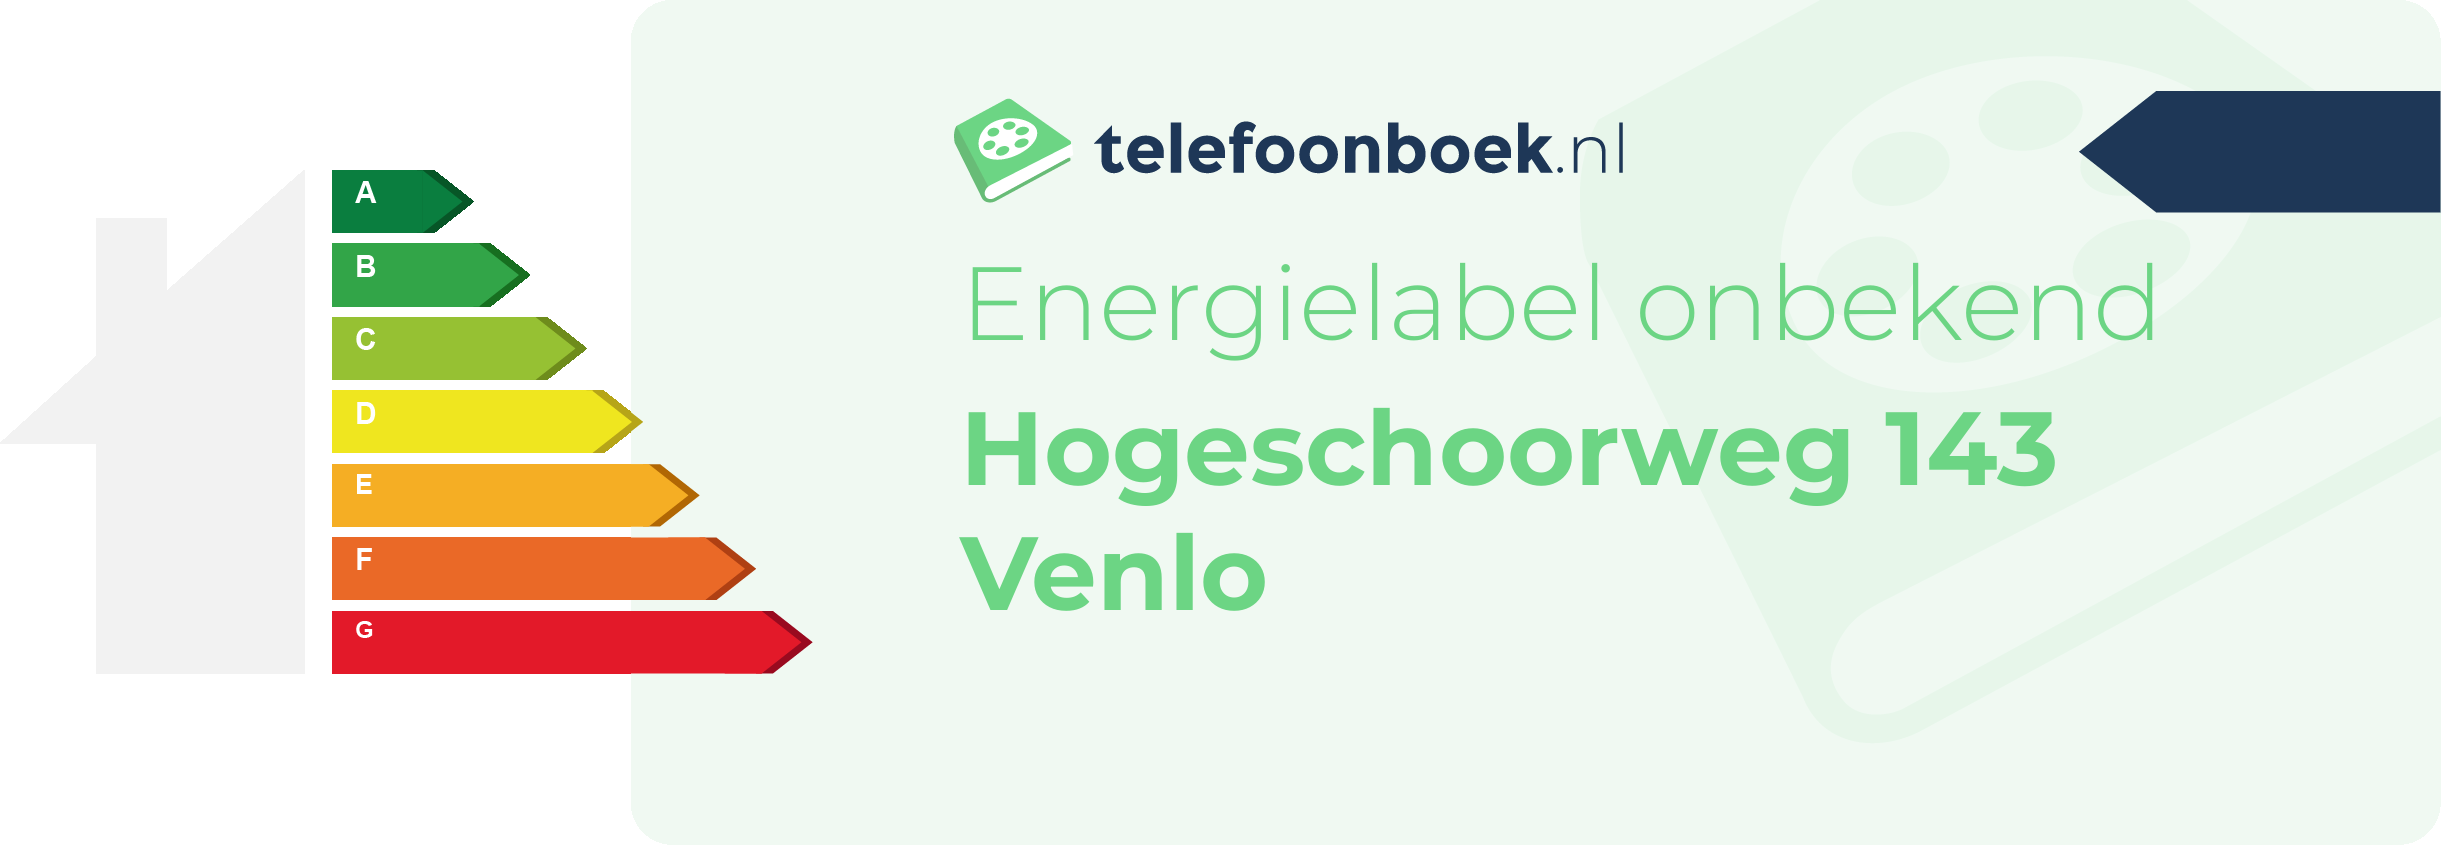 Energielabel Hogeschoorweg 143 Venlo